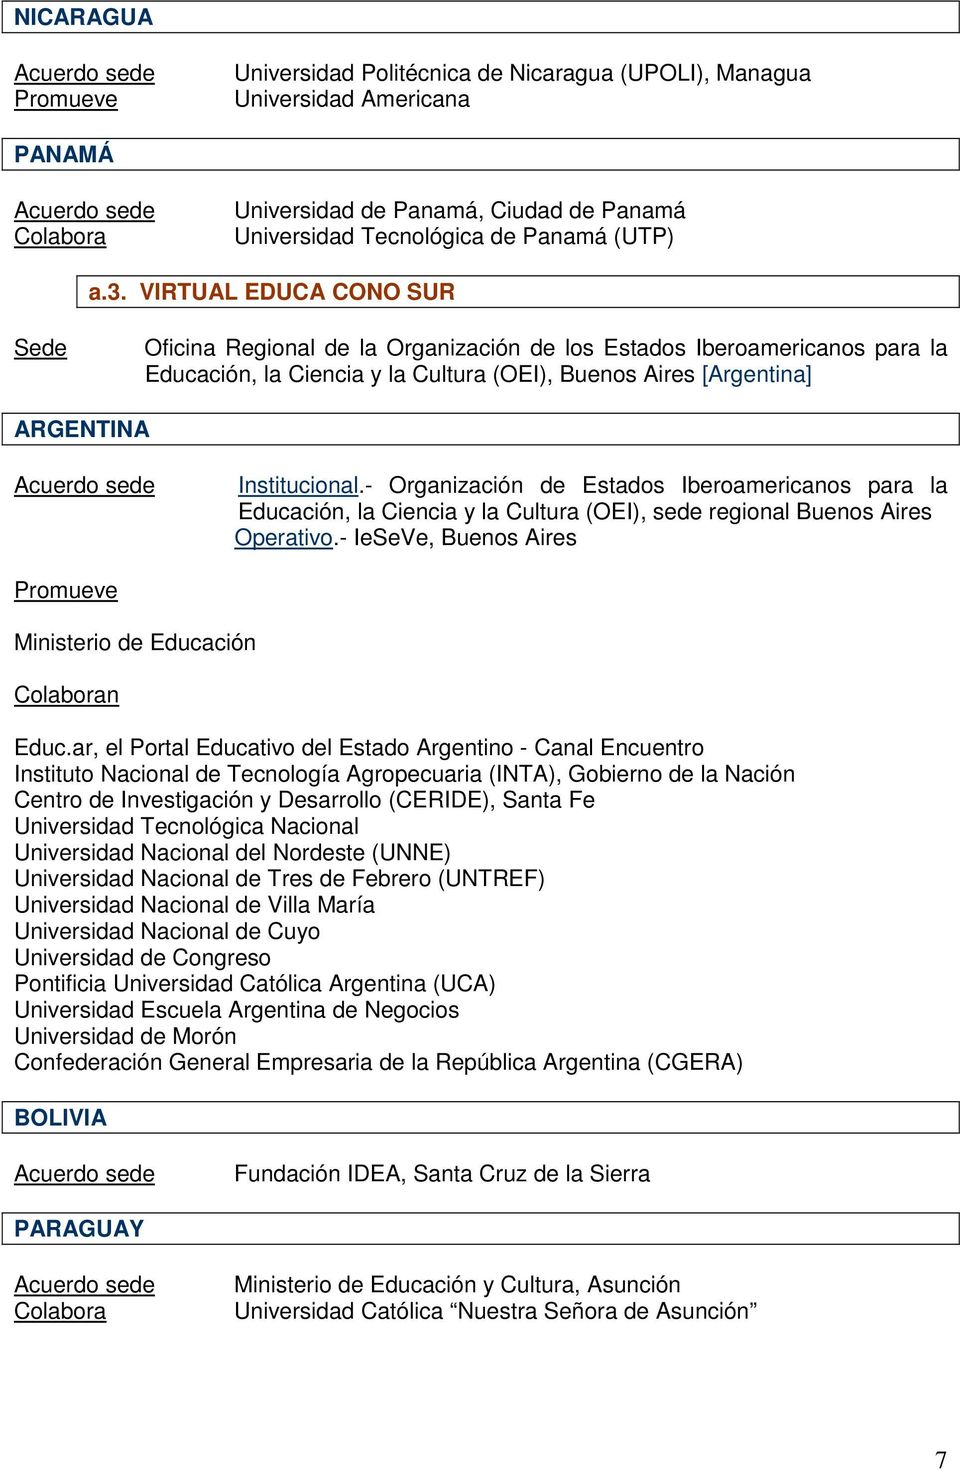 - Organización de Estados Iberoamericanos para la Educación, la Ciencia y la Cultura (OEI), sede regional Buenos Aires Operativo.- IeSeVe, Buenos Aires Ministerio de Educación Educ.